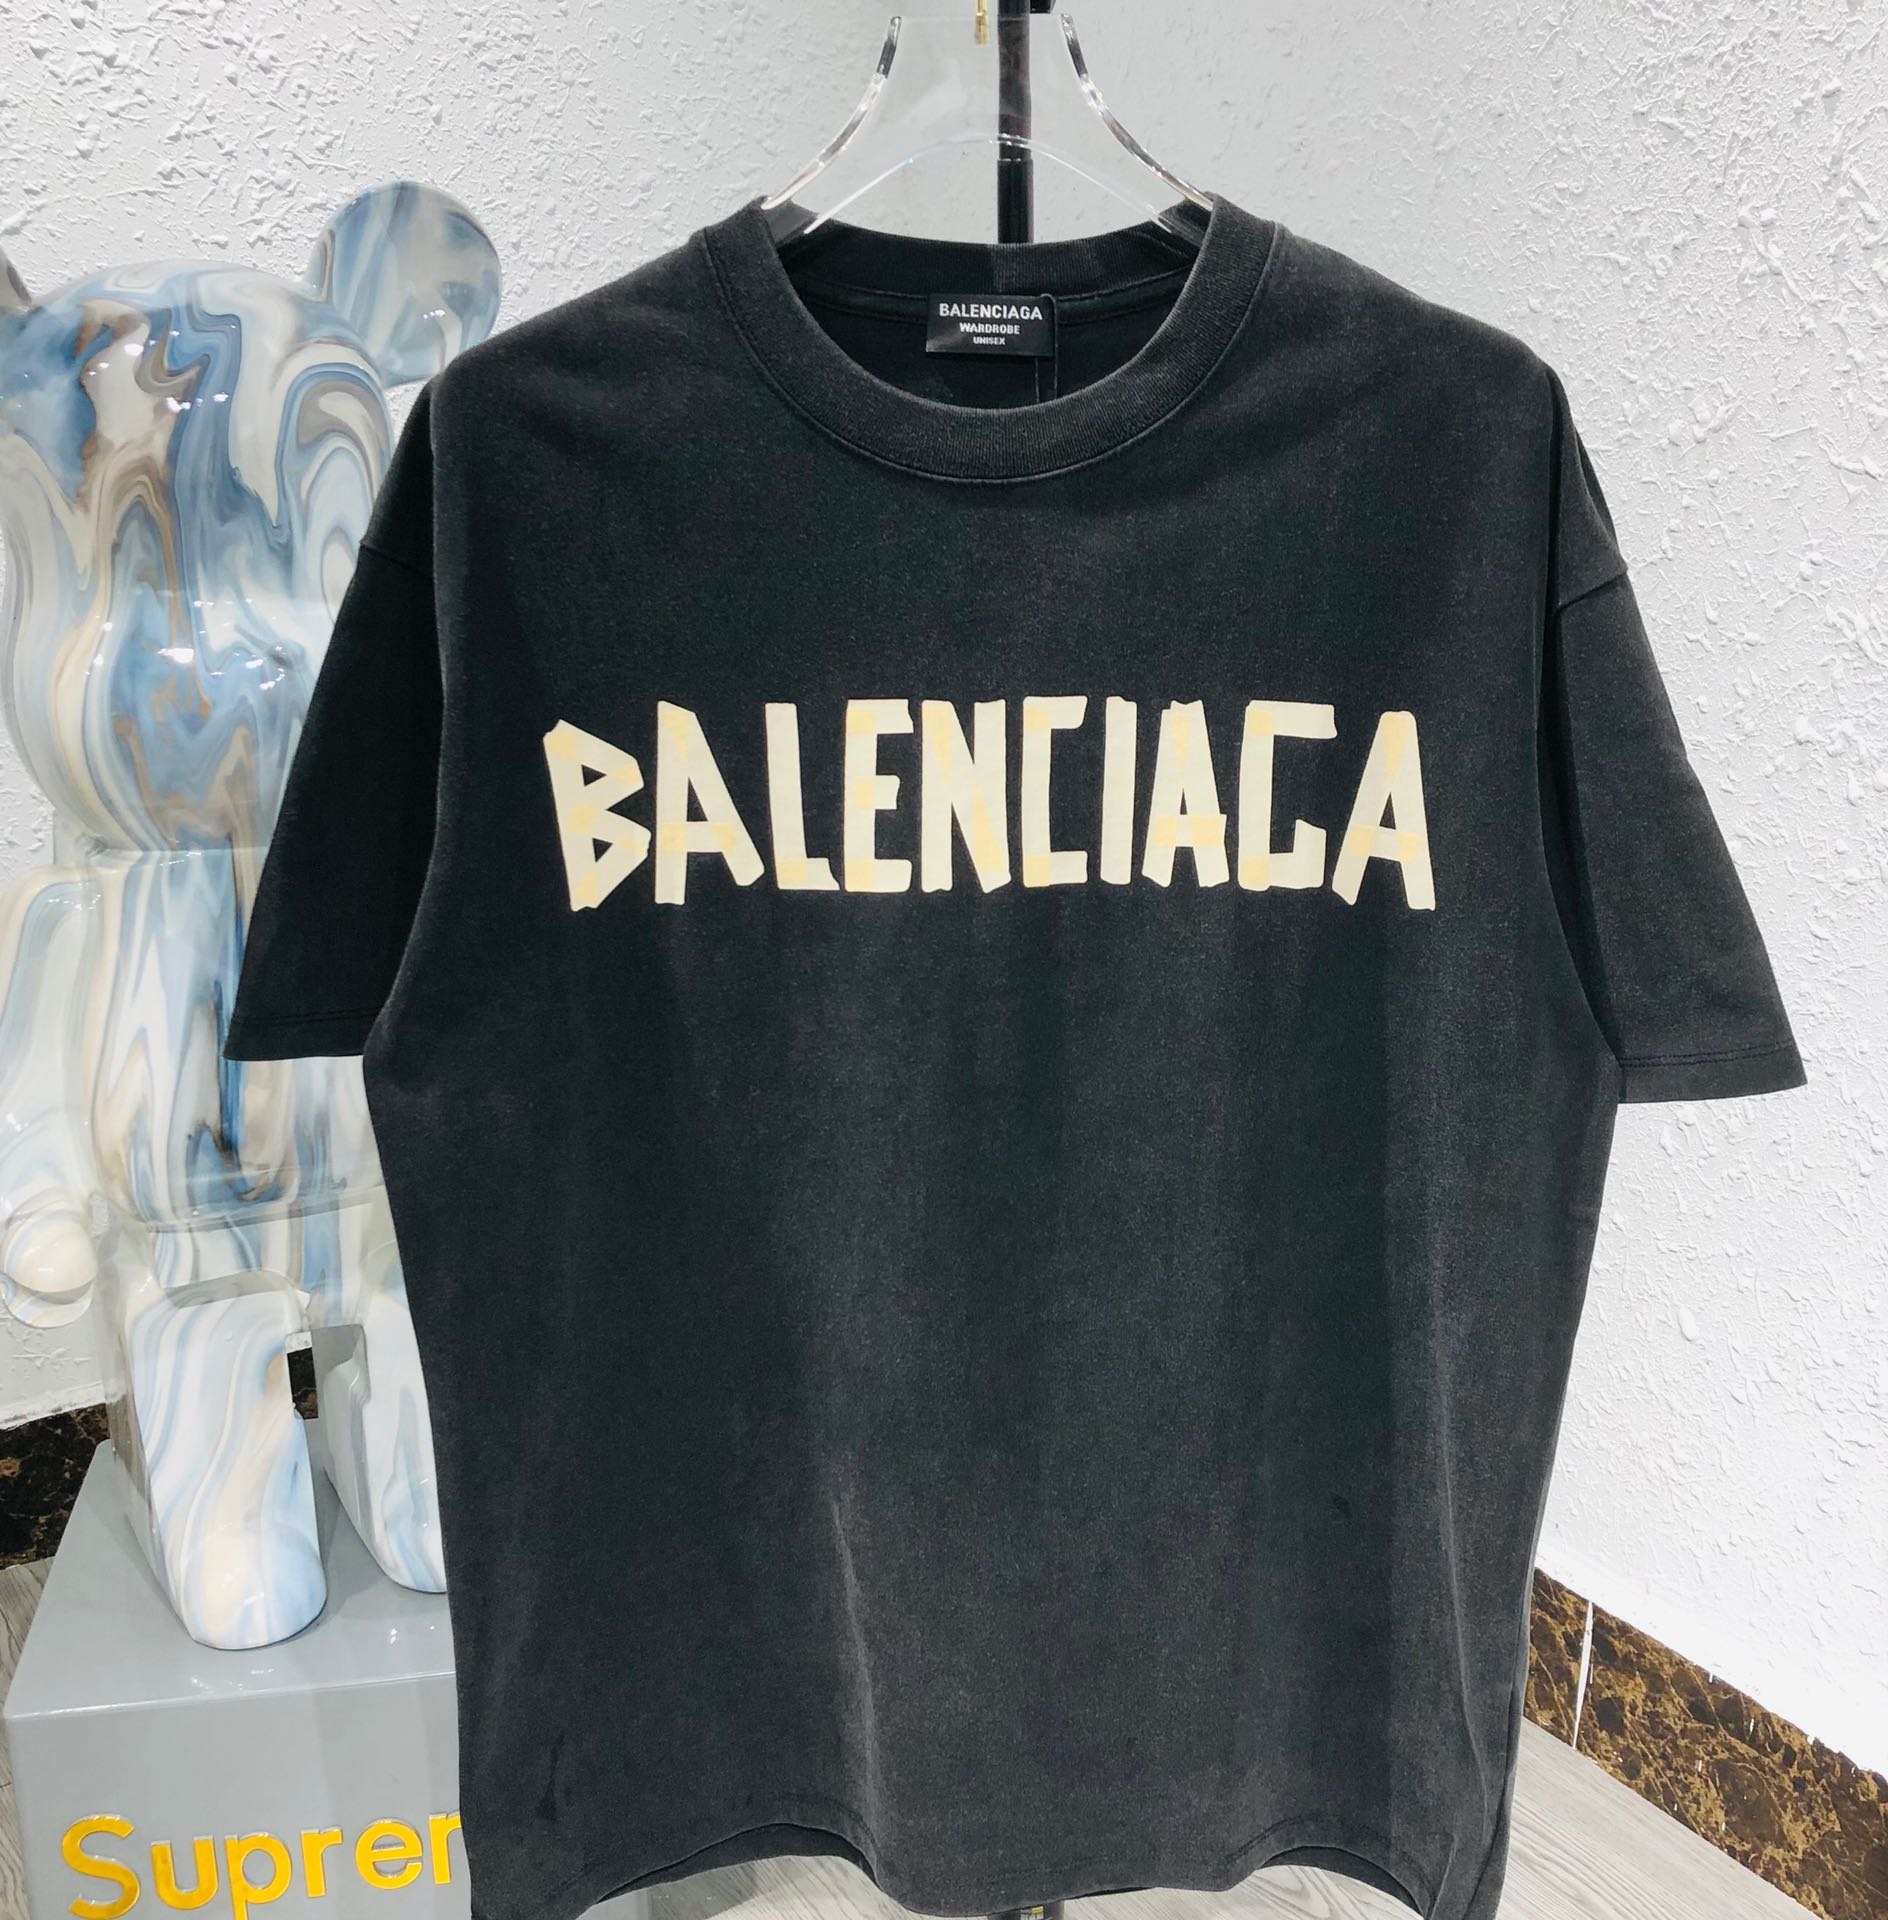 Balenciaga Clothing T-Shirt Black White Embroidery Unisex Short Sleeve